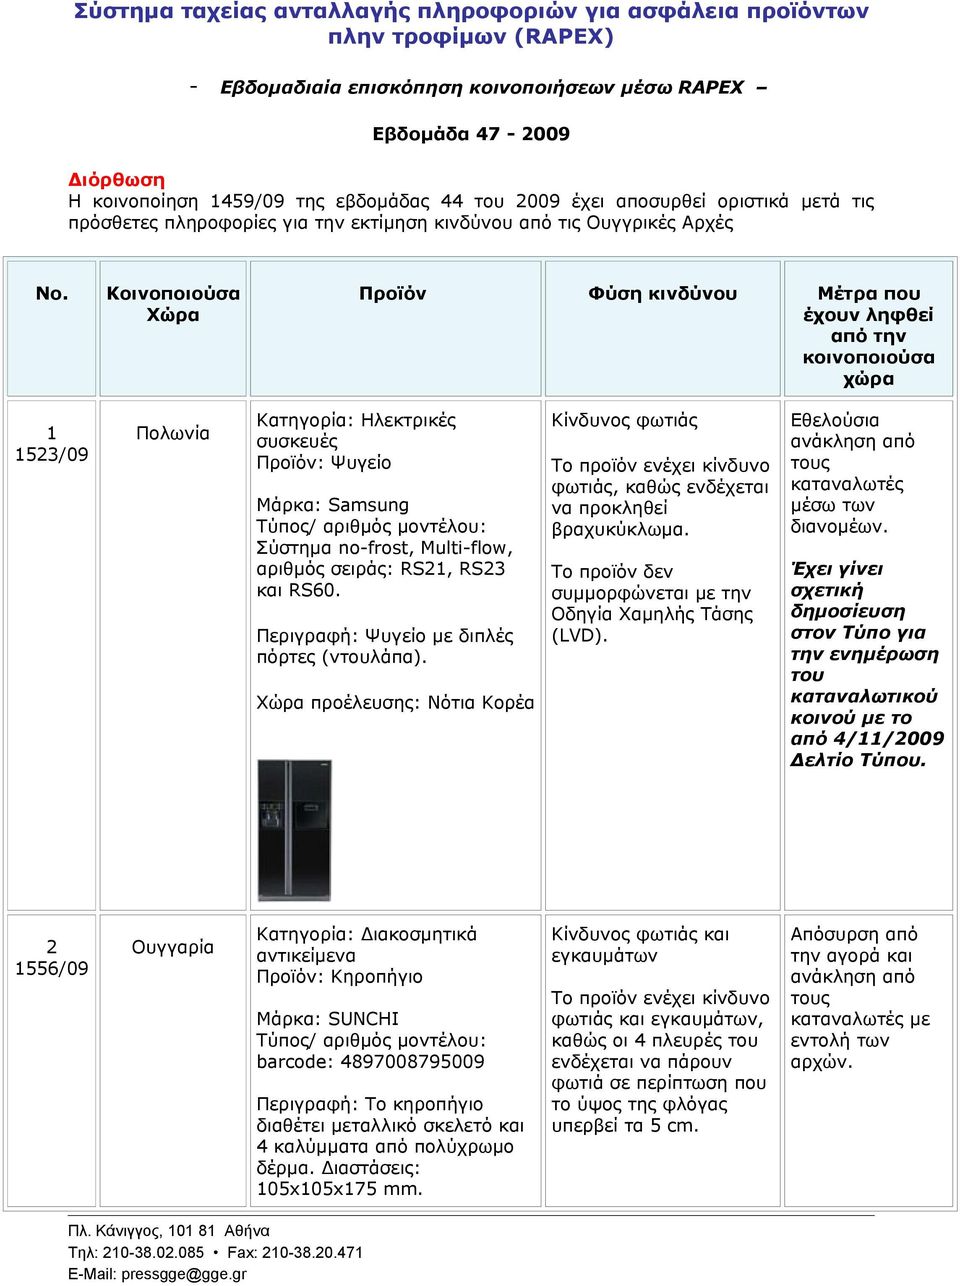 Κοινοποιούσα Xώρα Προϊόν Φύση κινδύνου Μέτρα που έχουν ληφθεί από την κοινοποιούσα χώρα 1 1523/09 Πολωνία Κατηγορία: Ηλεκτρικές συσκευές Προϊόν: Ψυγείο Μάρκα: Samsung Σύστημα no-frost, Multi-flow,